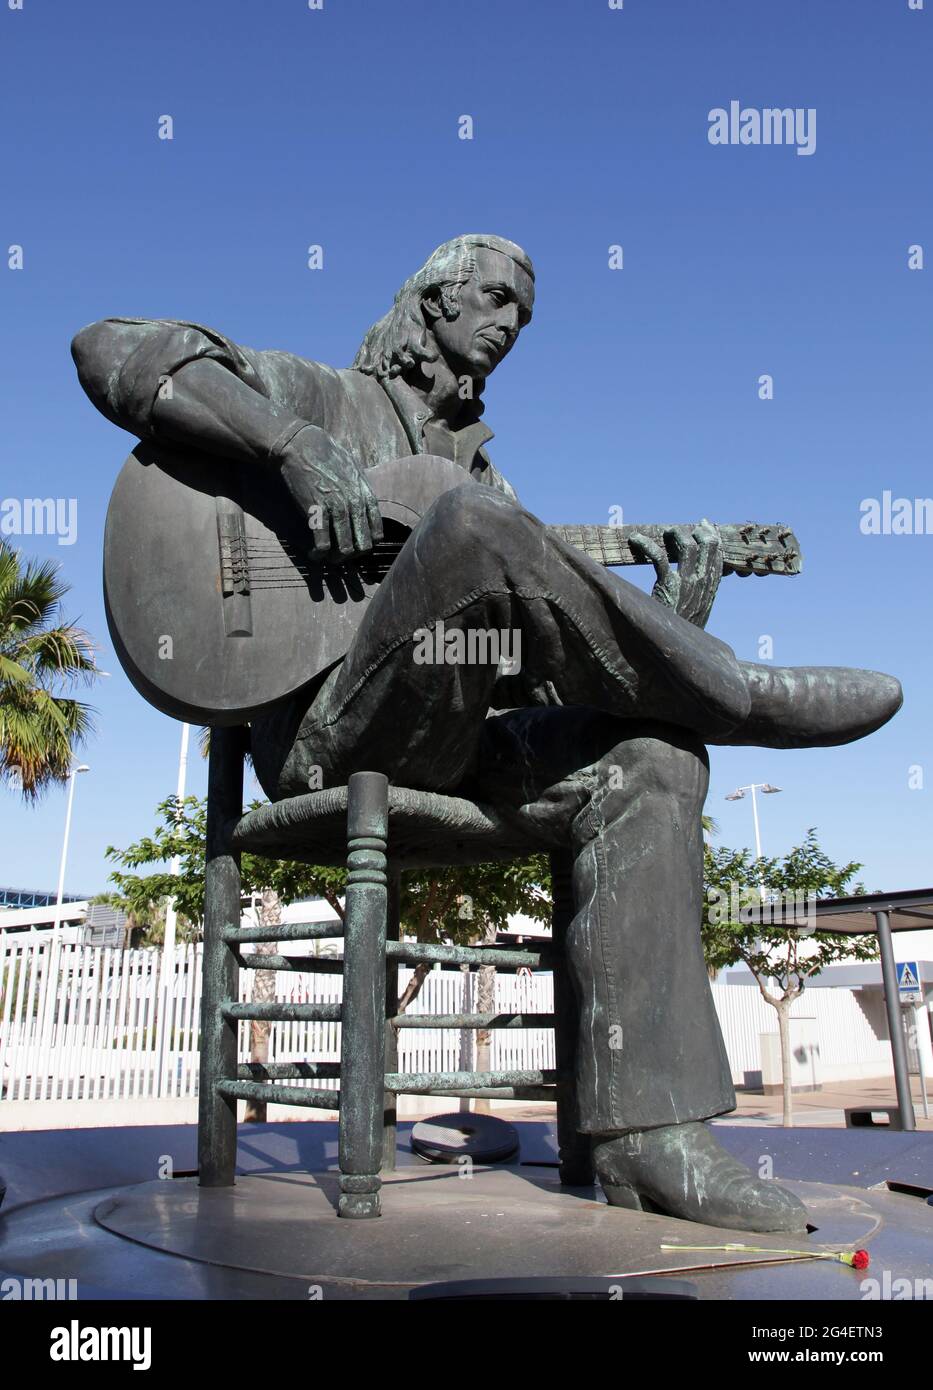 Monument Paco de Lucia /Statue à Algeciras Espagne (Francisco Gustavo Sánchez Gómez) (21 décembre 1947 – 25 février 2014) connu sous le nom de Paco de Lucía.Spanish virtuoso flamenco guitariste, compositeur.UN promoteur du nouveau style flamenco. Banque D'Images